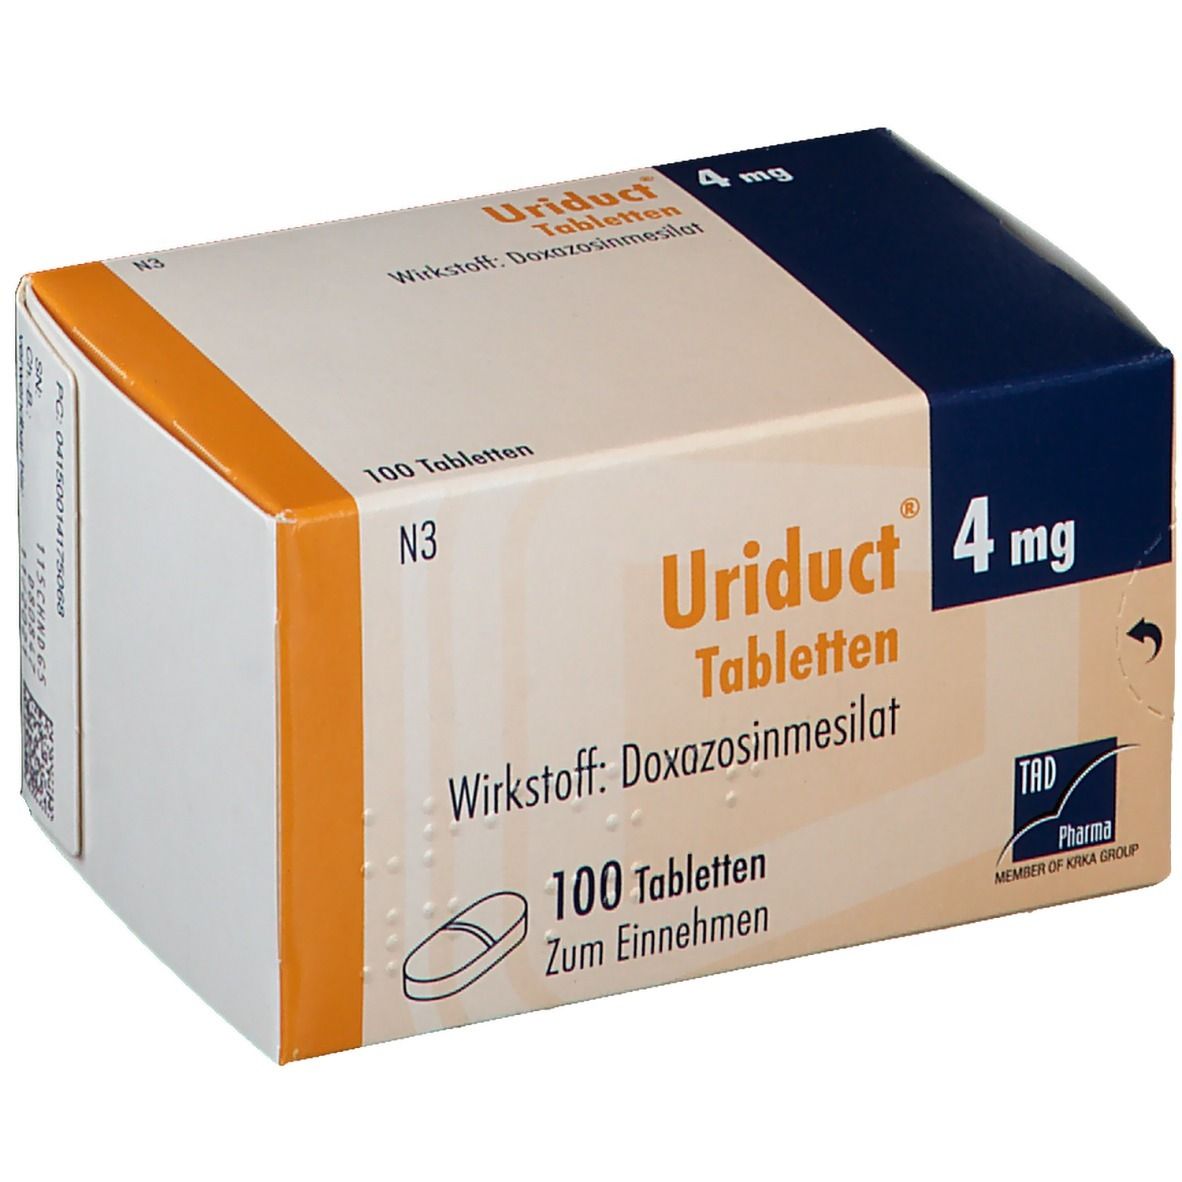 Uriduct® 4 mg